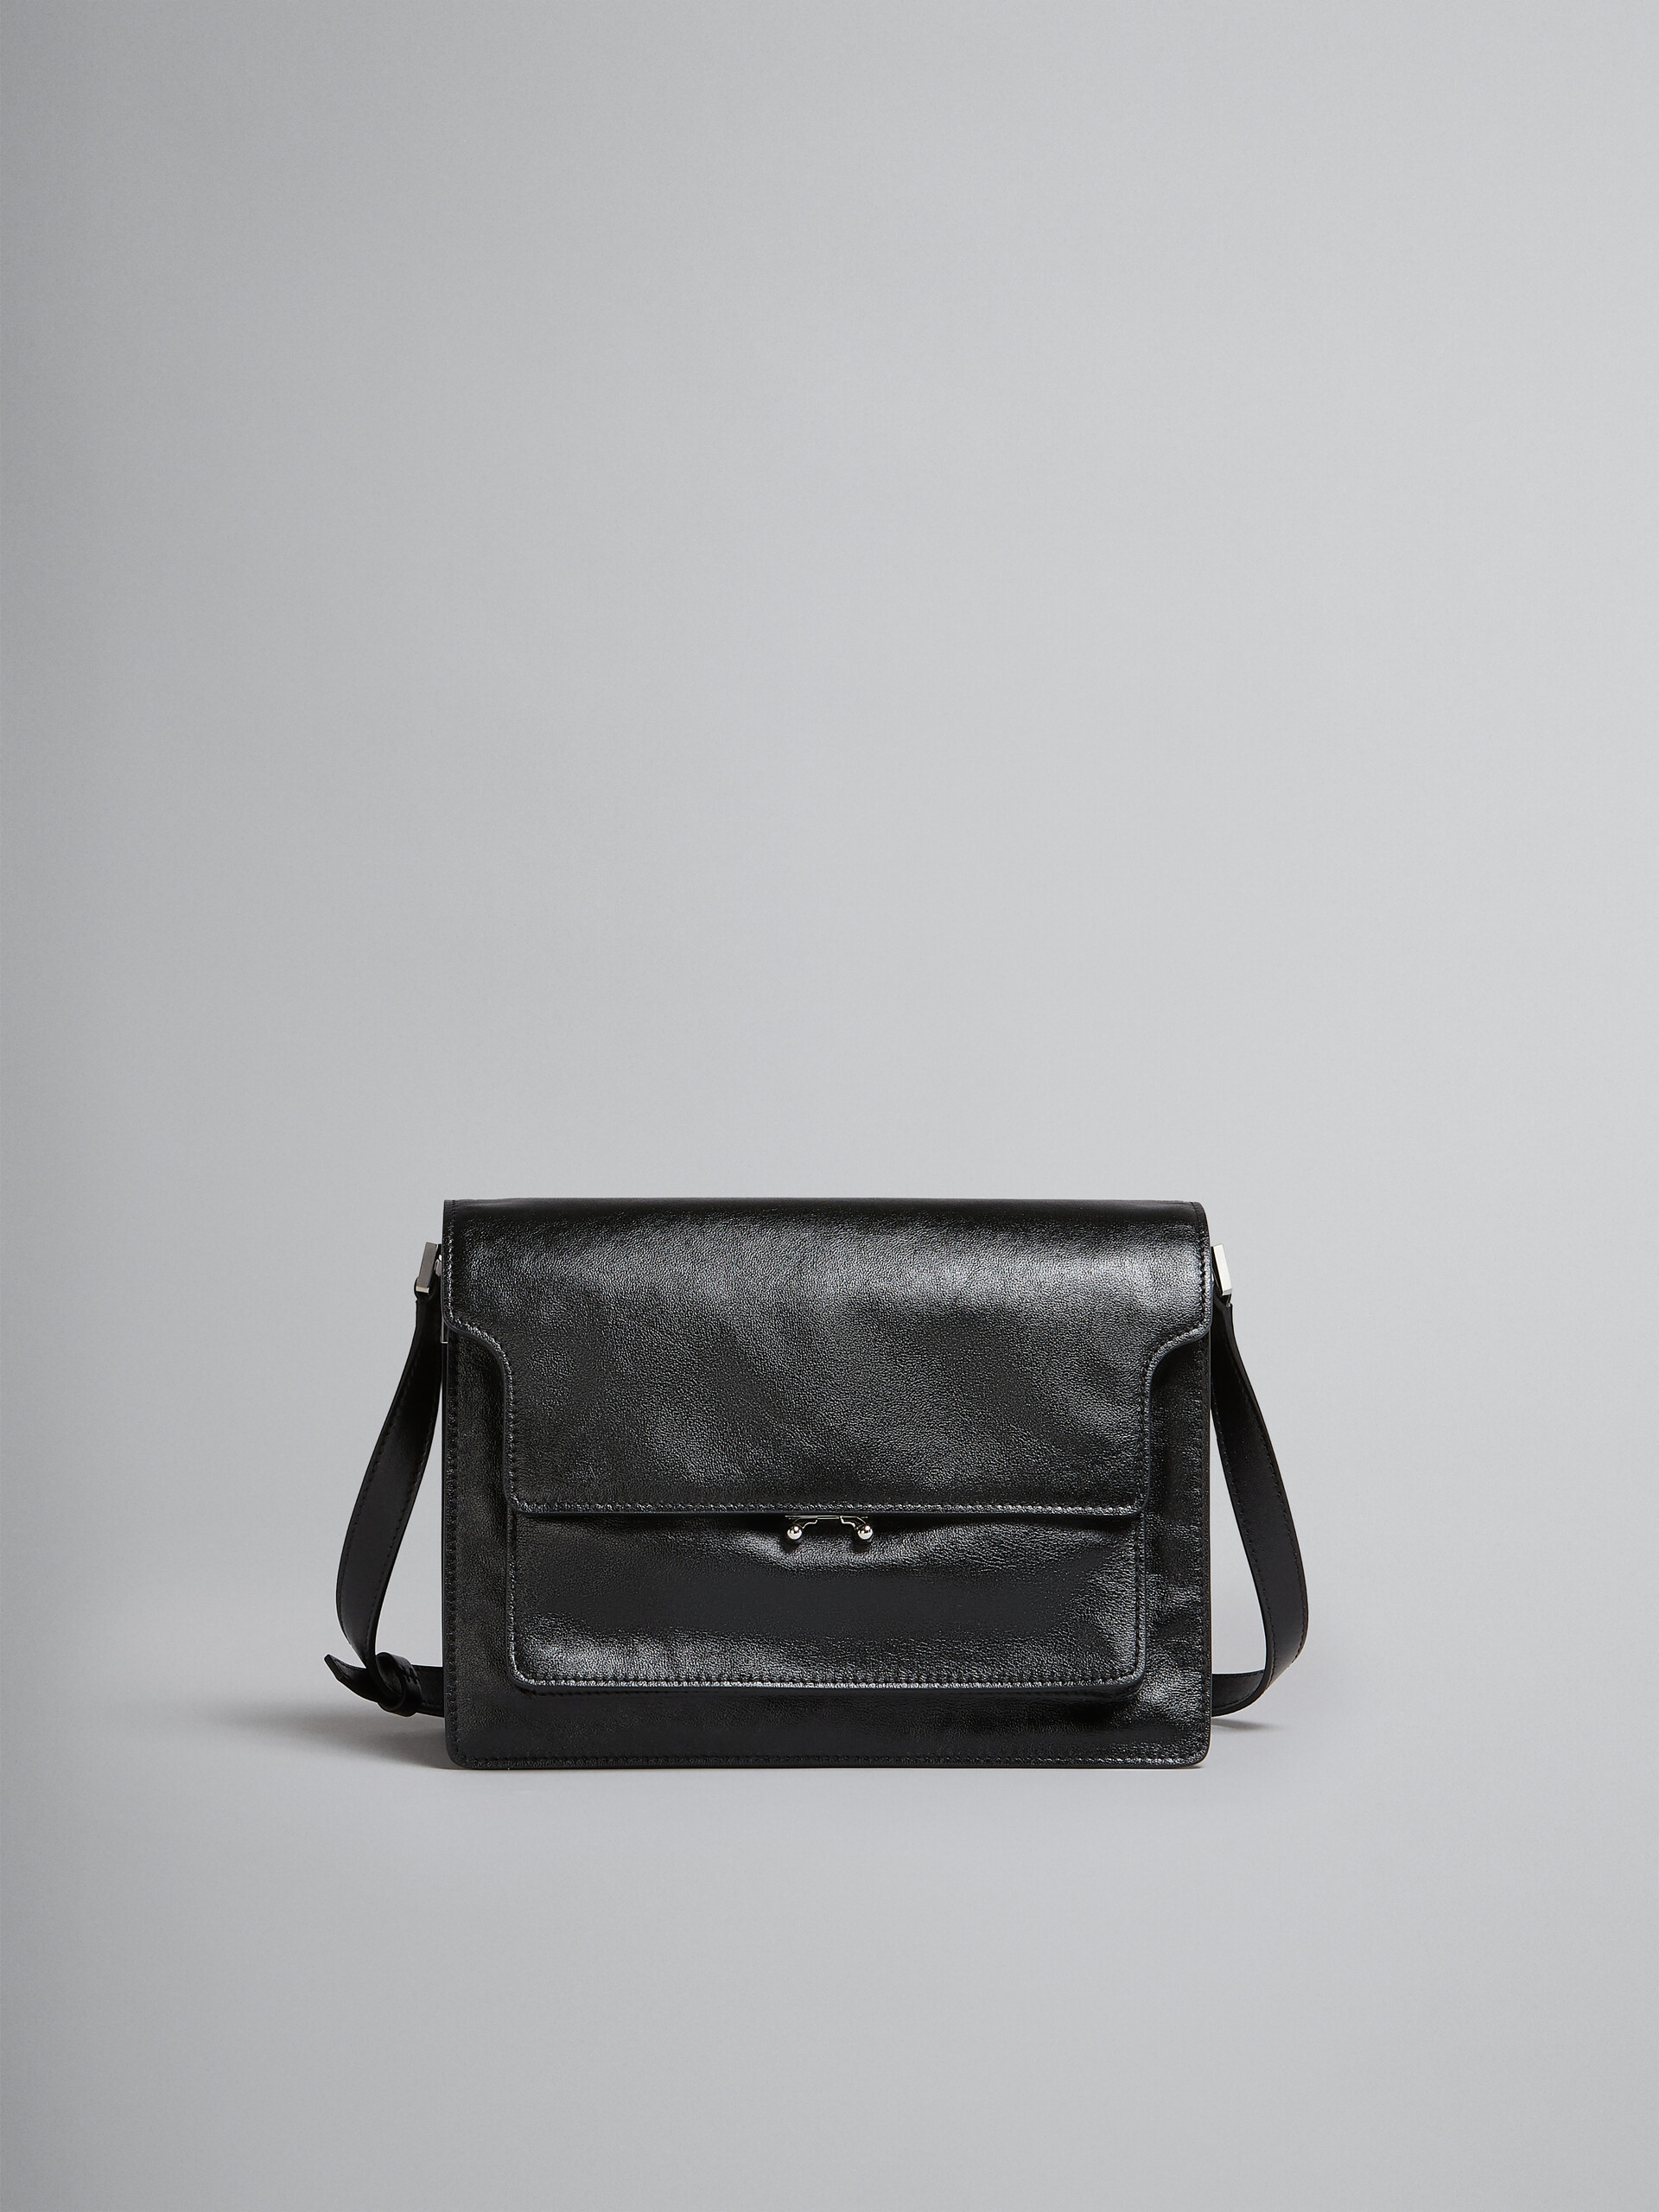 Trunk Soft Large Bag in black leather - Shoulder Bag - Image 1